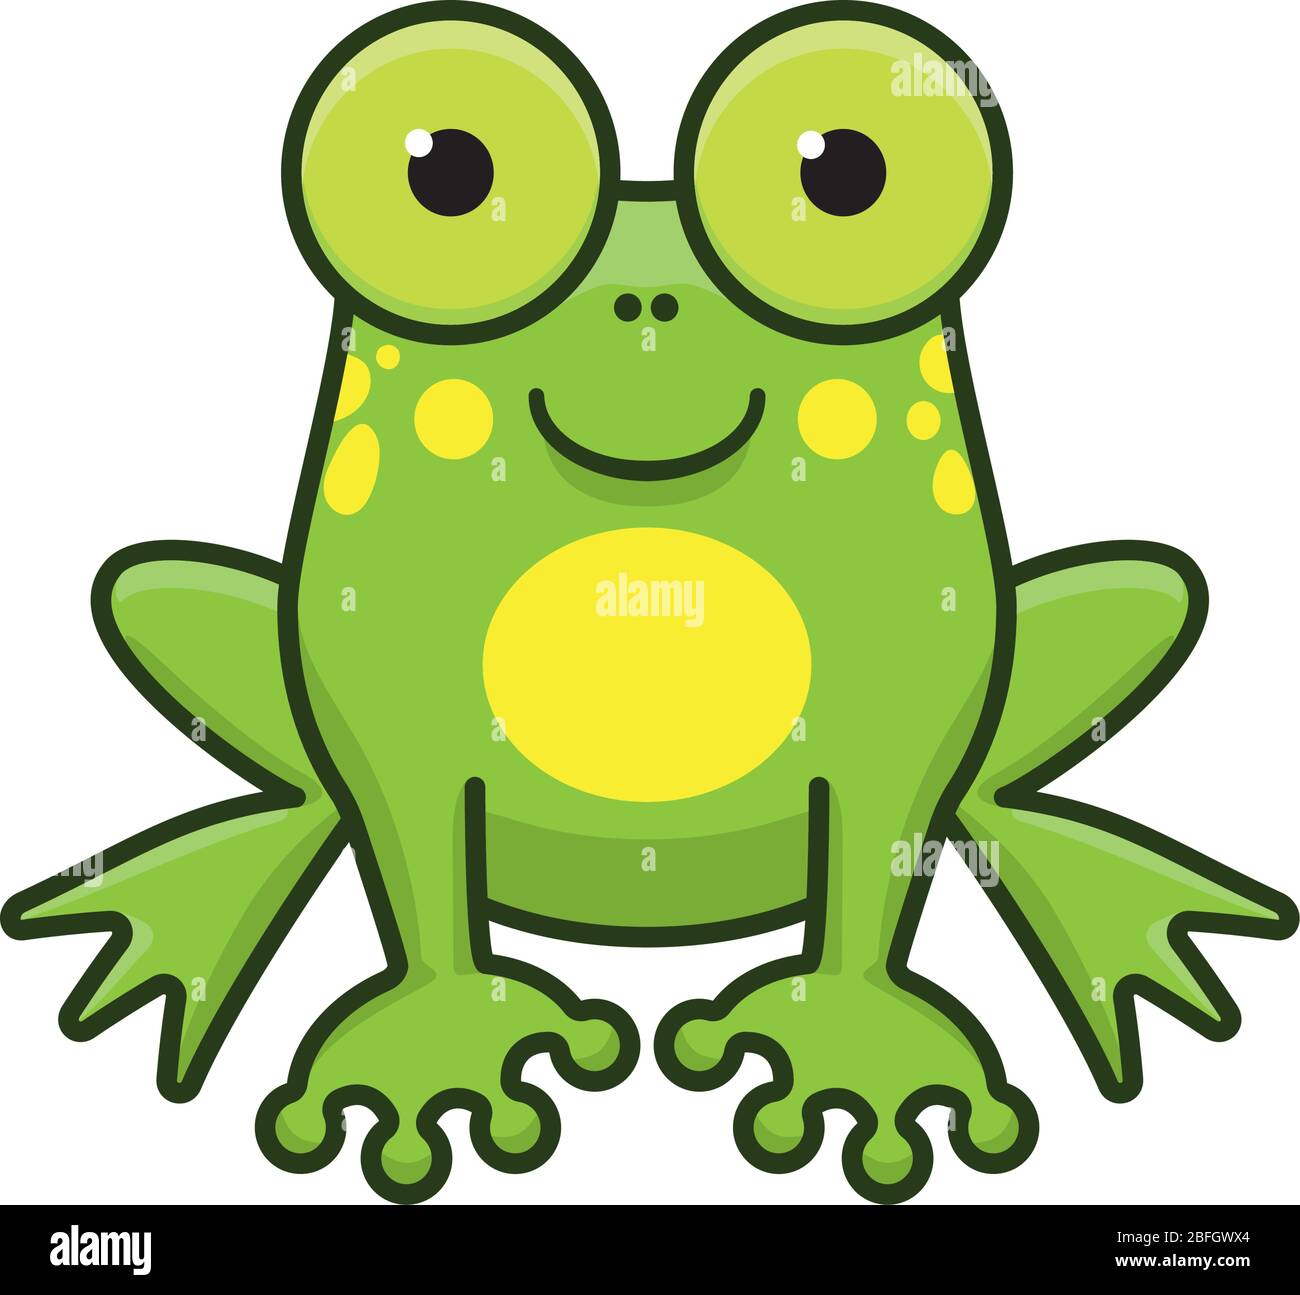 Mignonne illustration vectorielle isolée de grenouille dessinée pour sauver la journée des grenouilles le 25 avril. Symbole de caractère de couleur d'animal d'amphibiens. Illustration de Vecteur